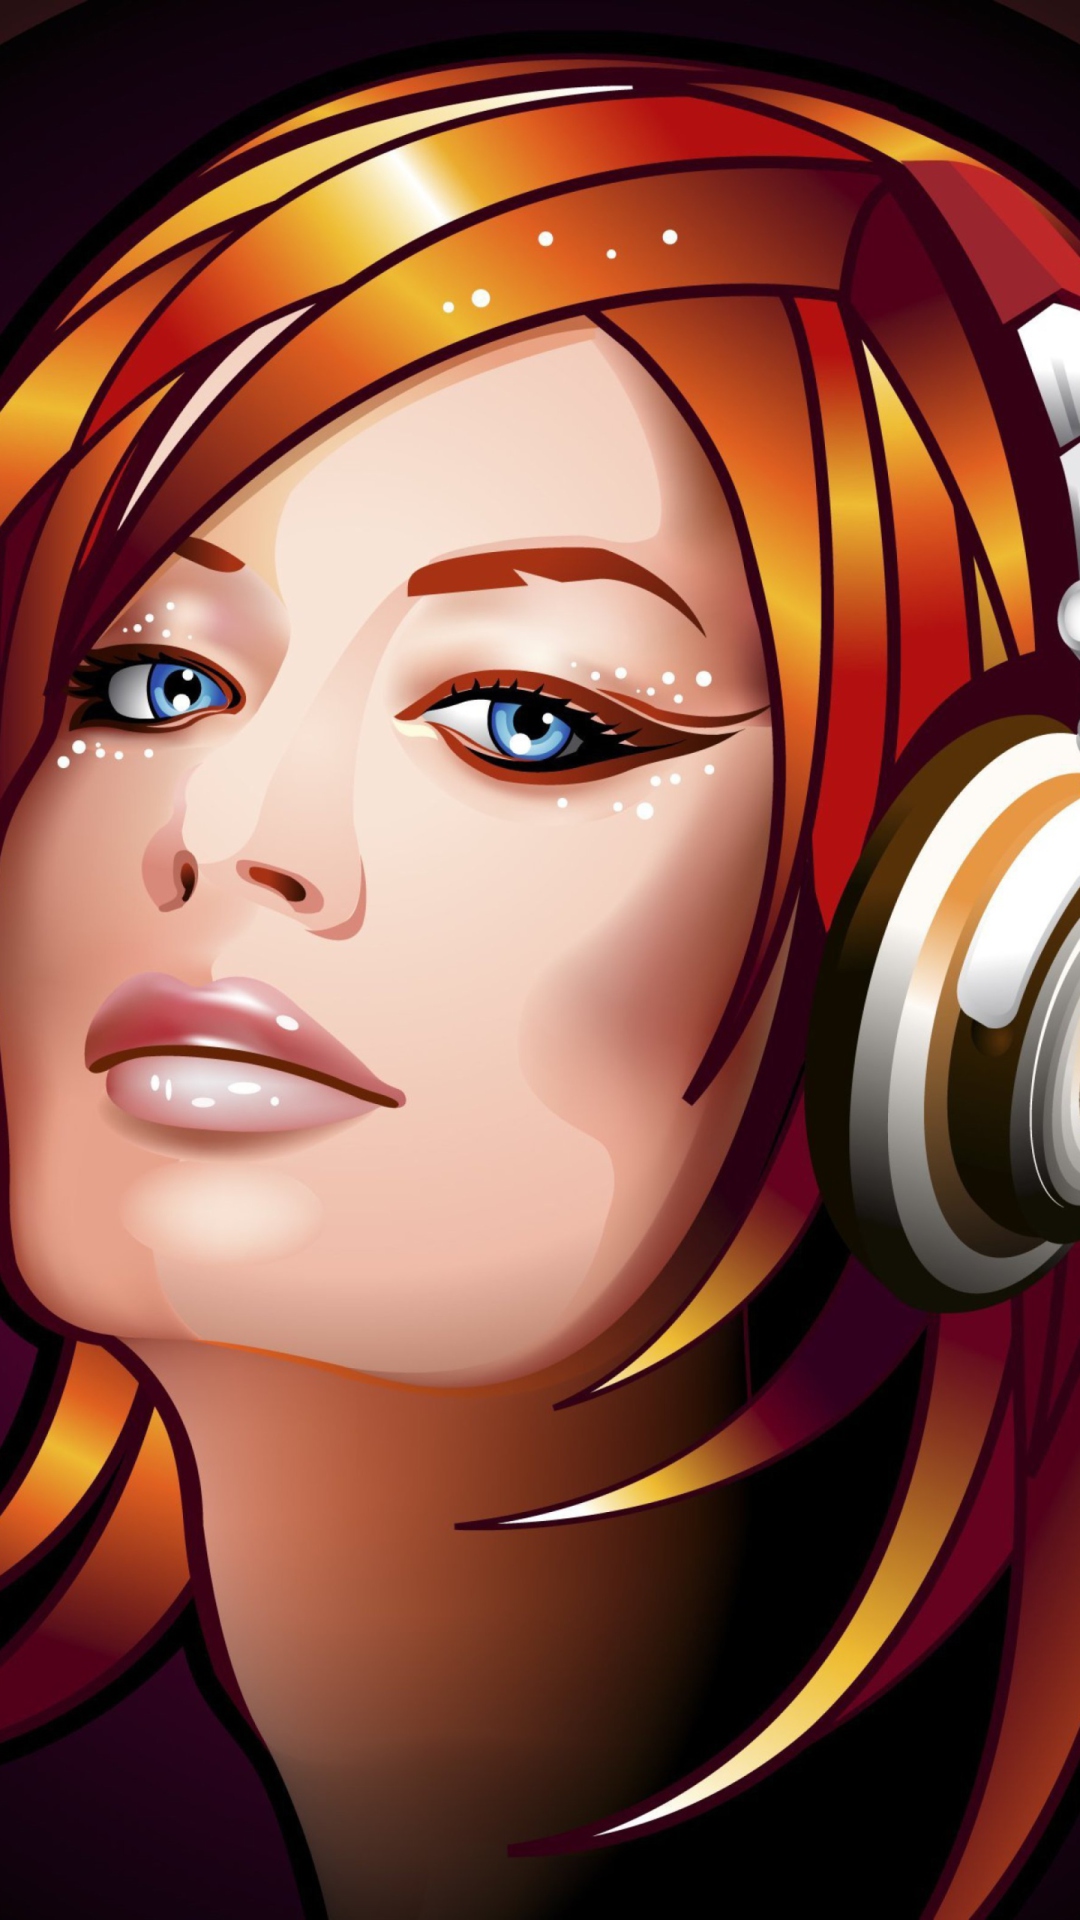 Headphones Girl Illustration wallpaper 1080x1920